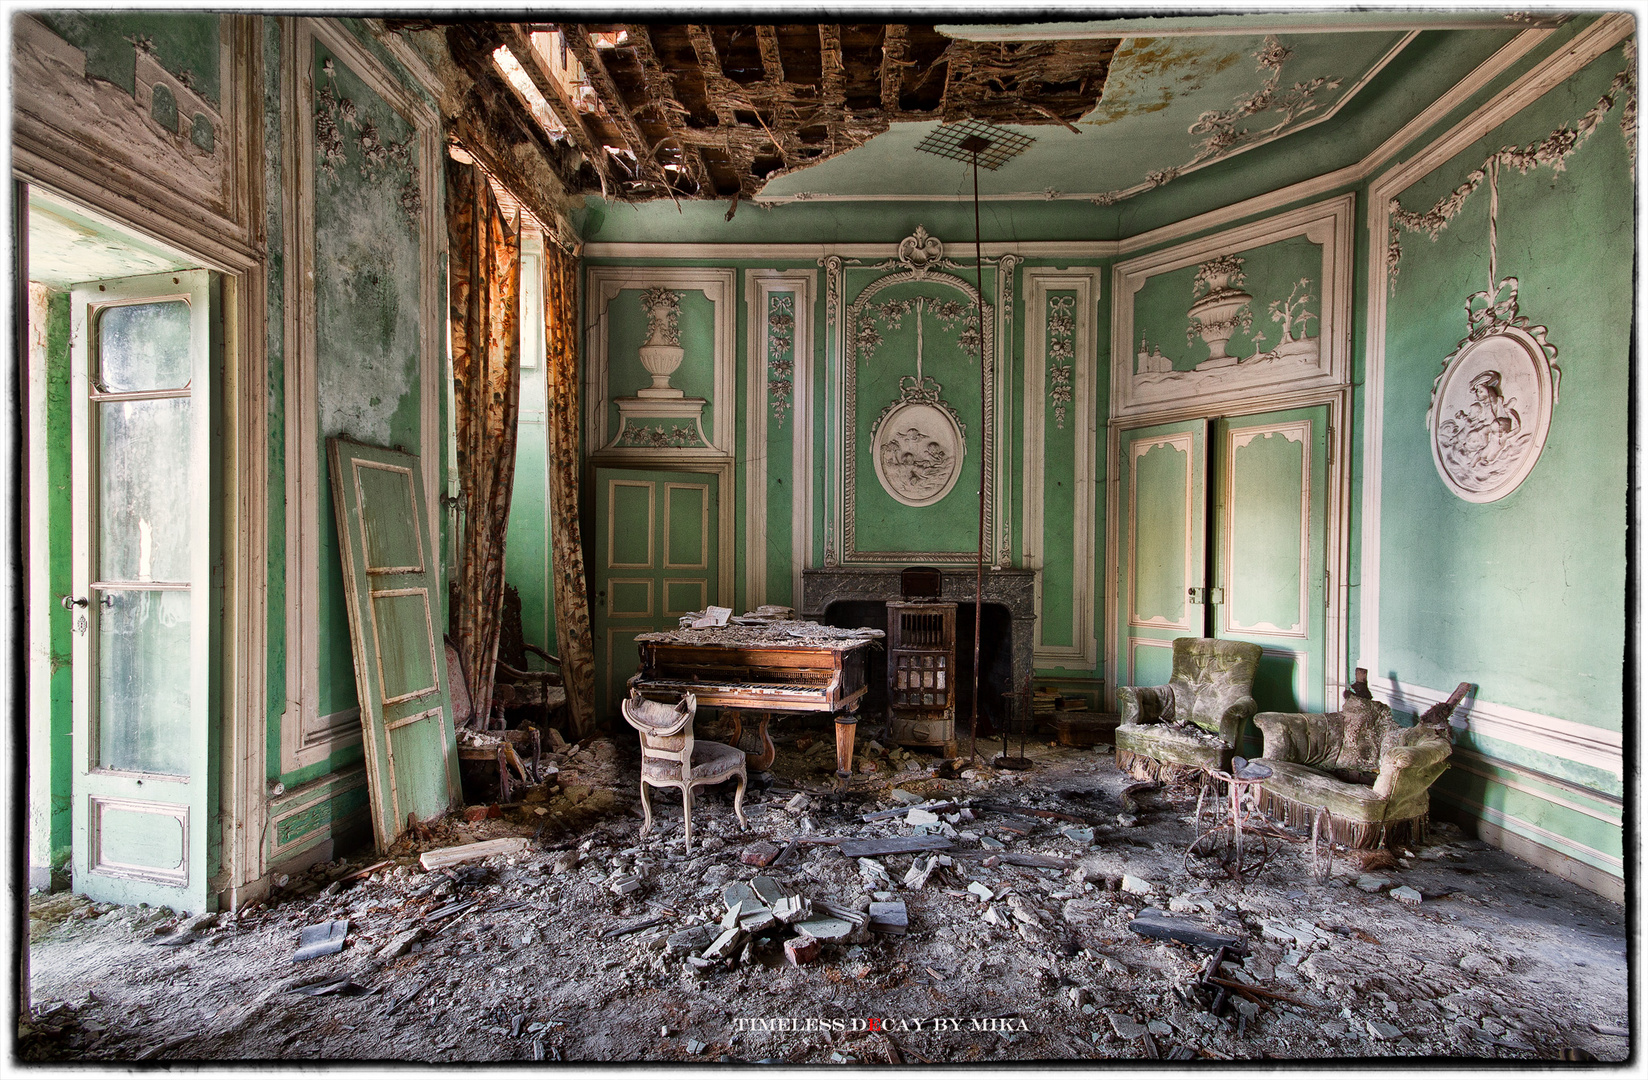 - piano in the rubble -